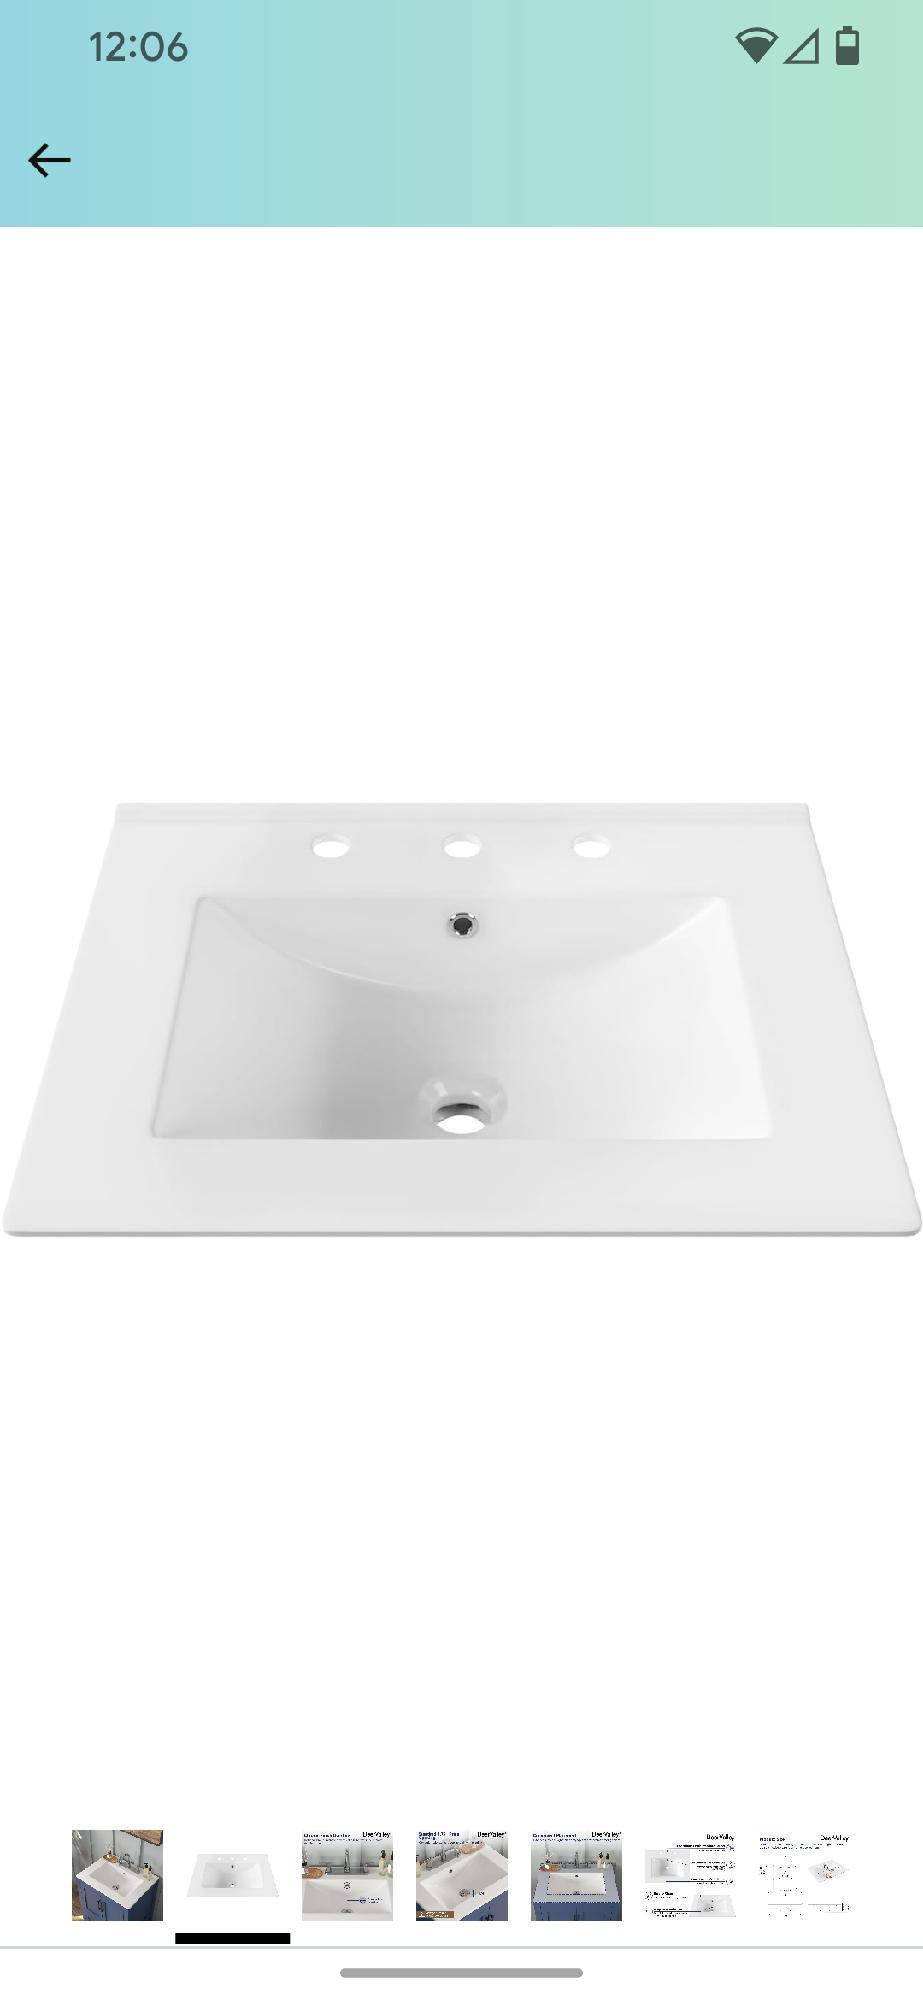 DeerValley DV-1V0097 Vanity Top Sink, 24"x18" Rectangular Drop In Bathroom Sink White Ceramic Vanity